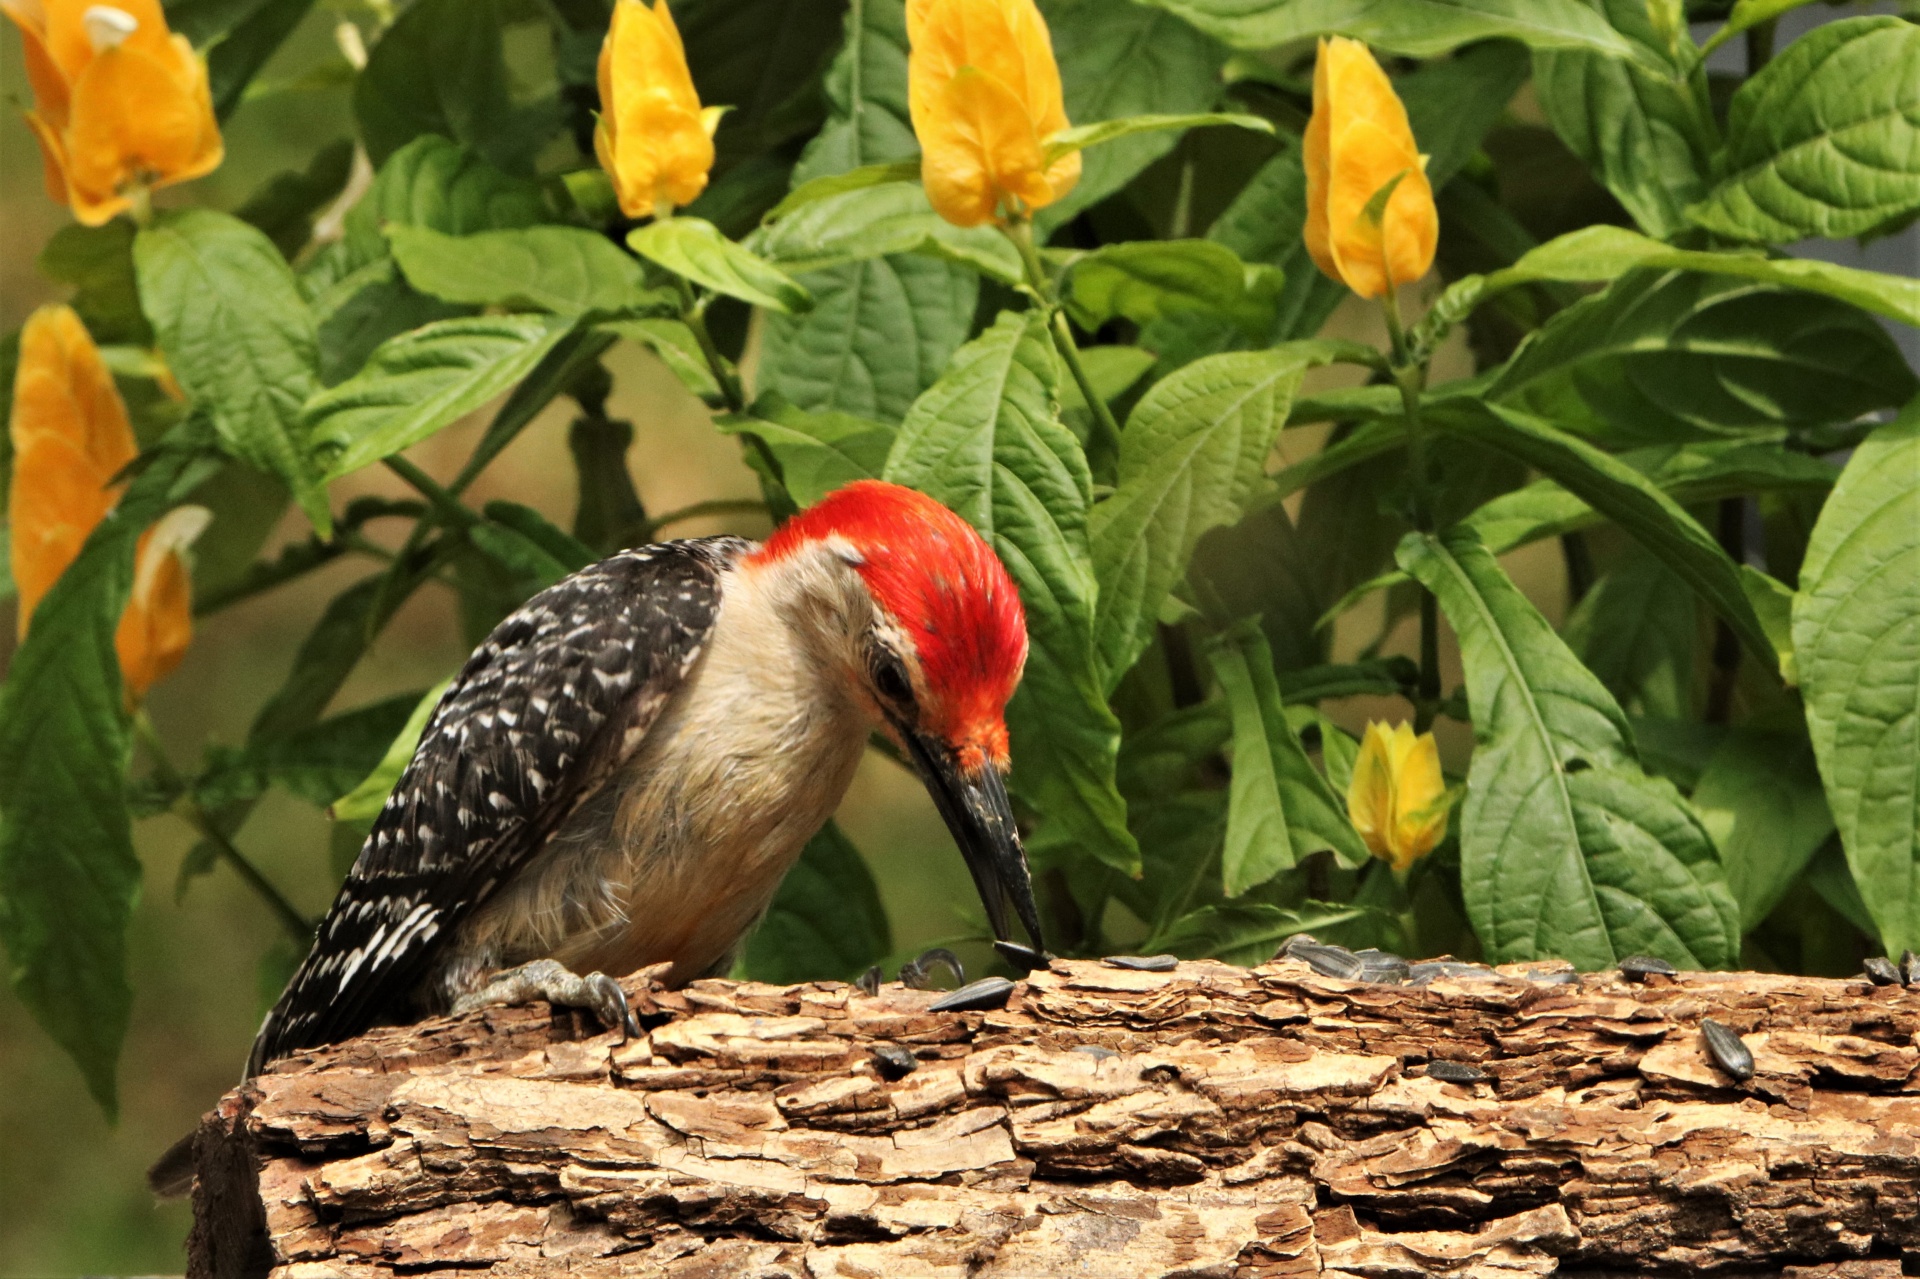 Red-bellied Woodpecker On Branch